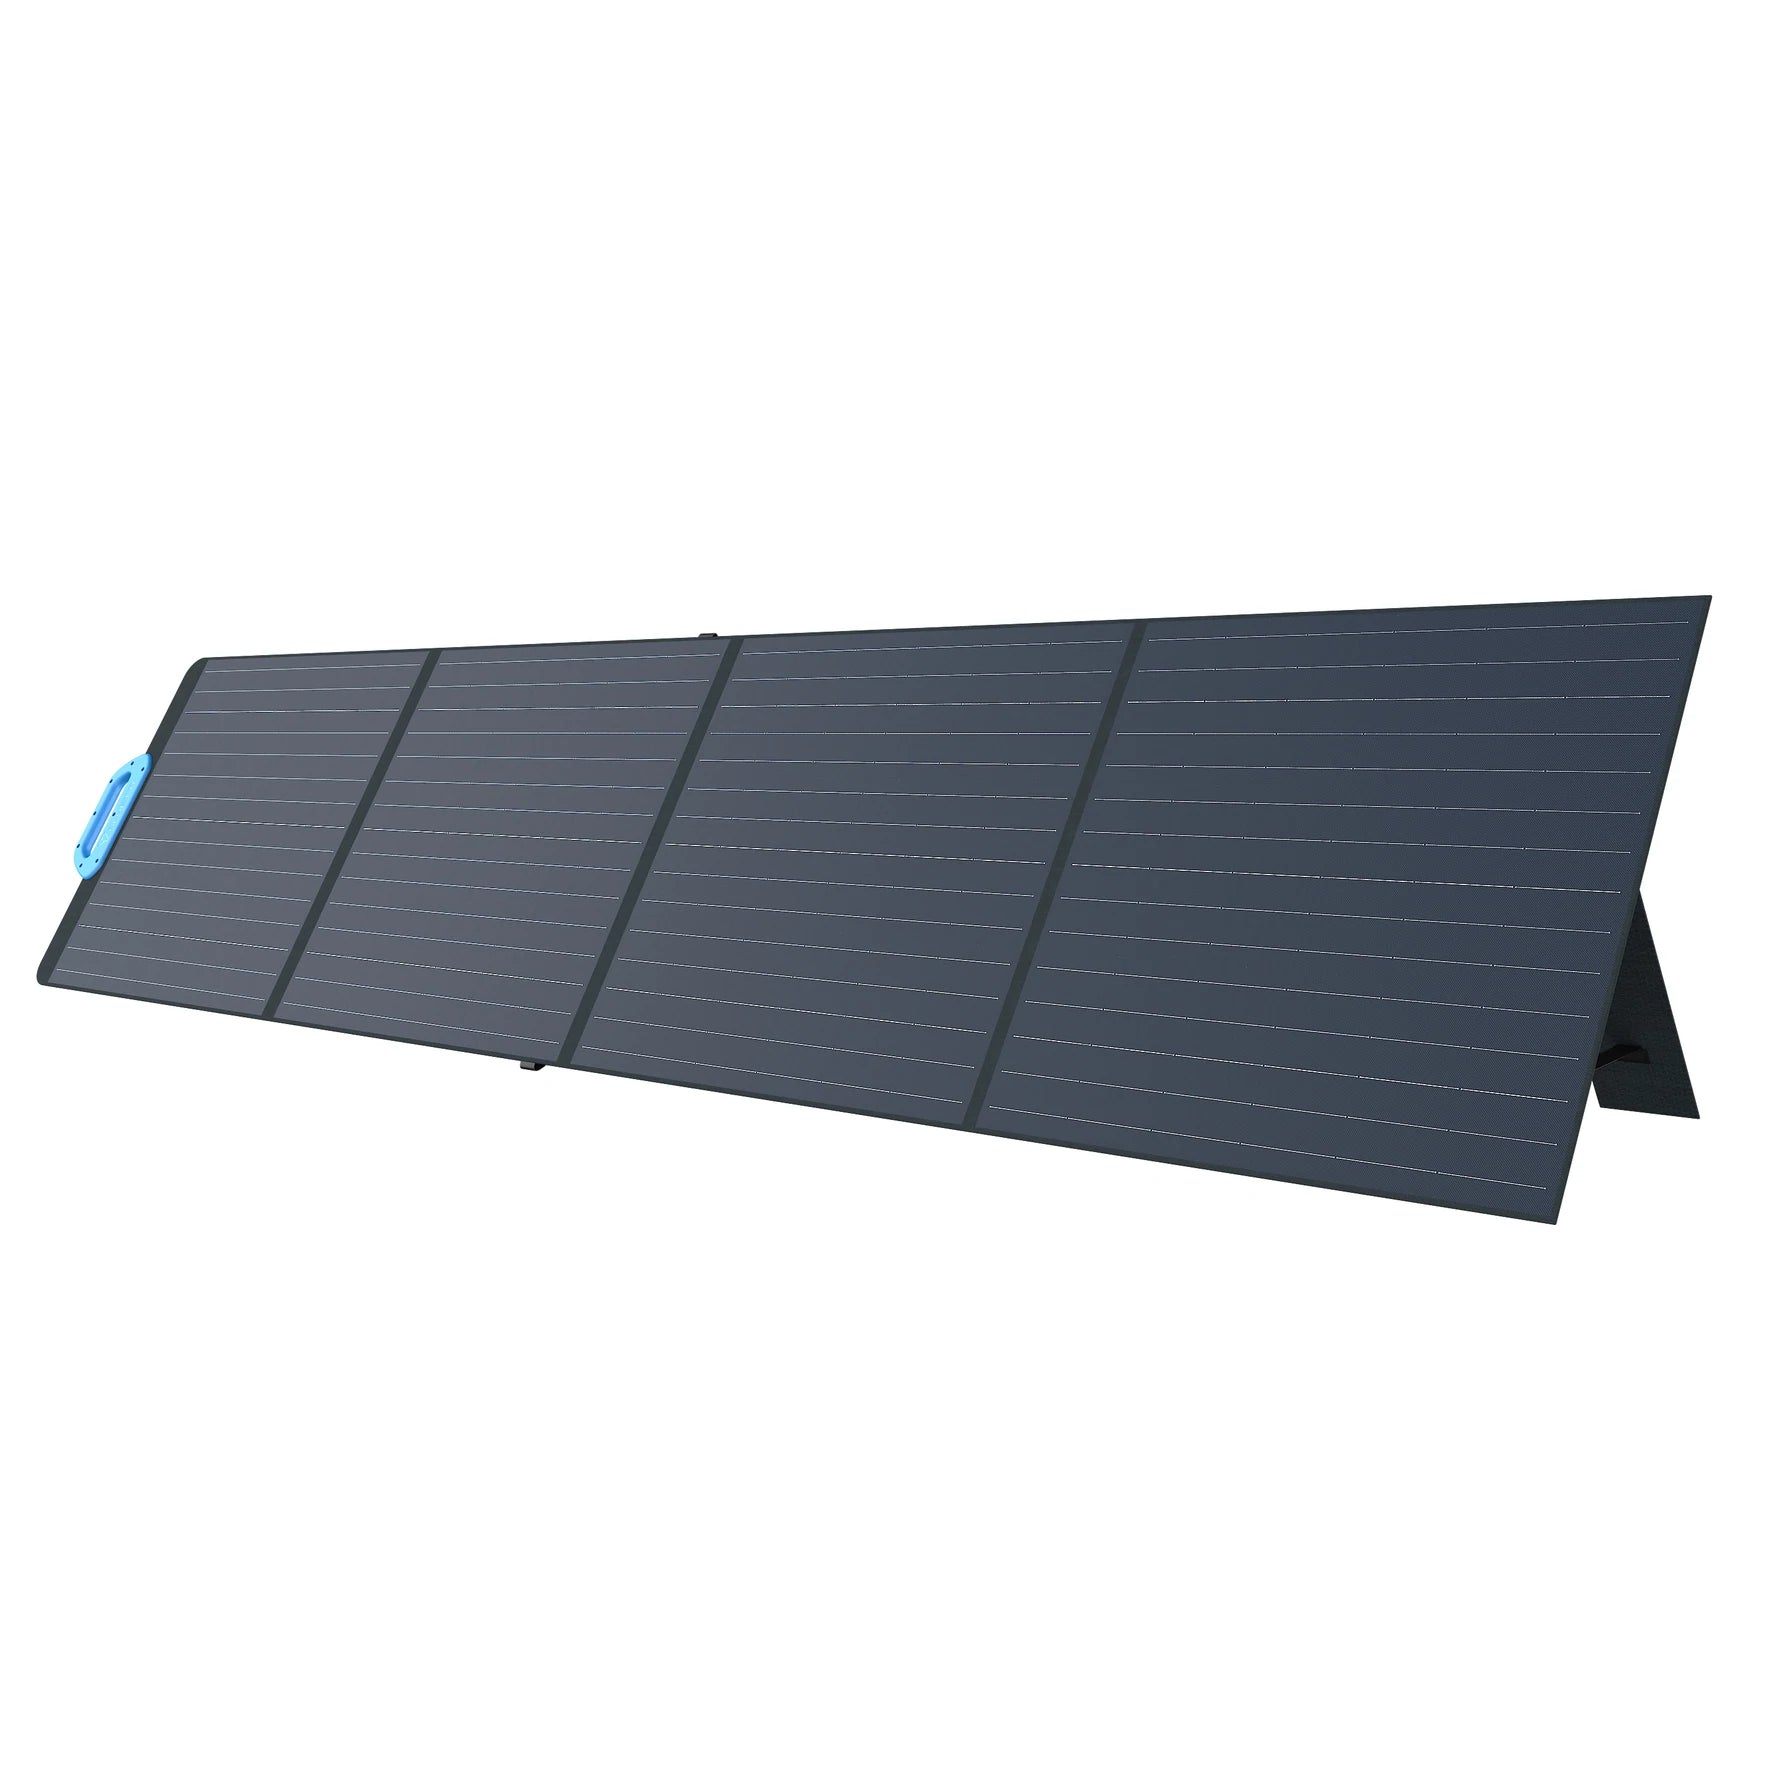 BLUETTI PV200 Portable Solar Panel | 200W 20V